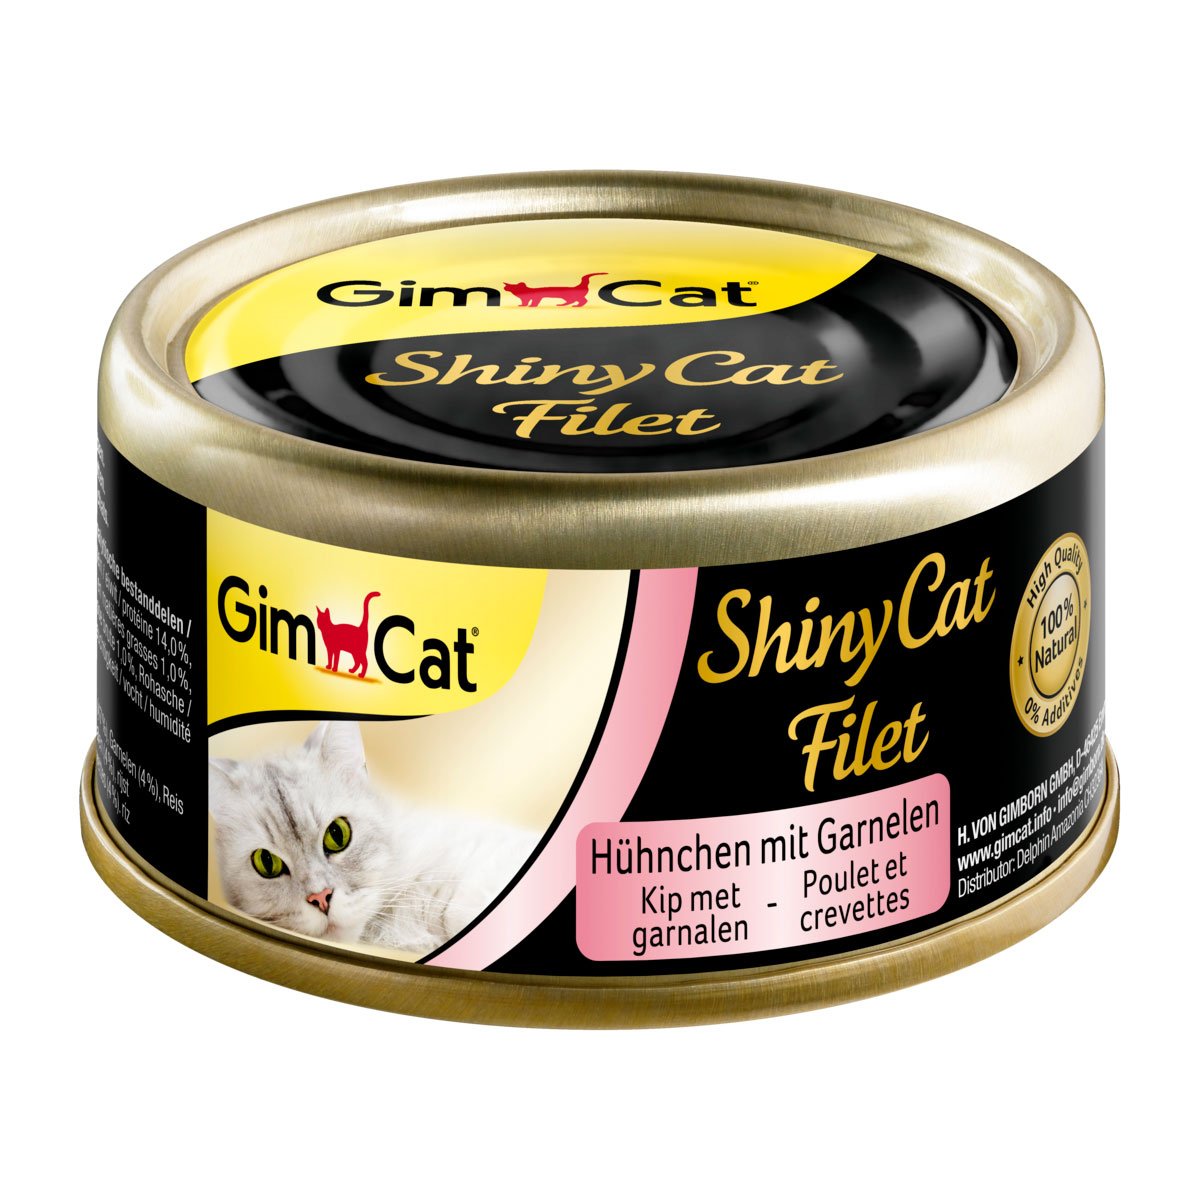 GimCat ShinyCat Filet Hühnchen & Garnelen 6x70g von Gimcat